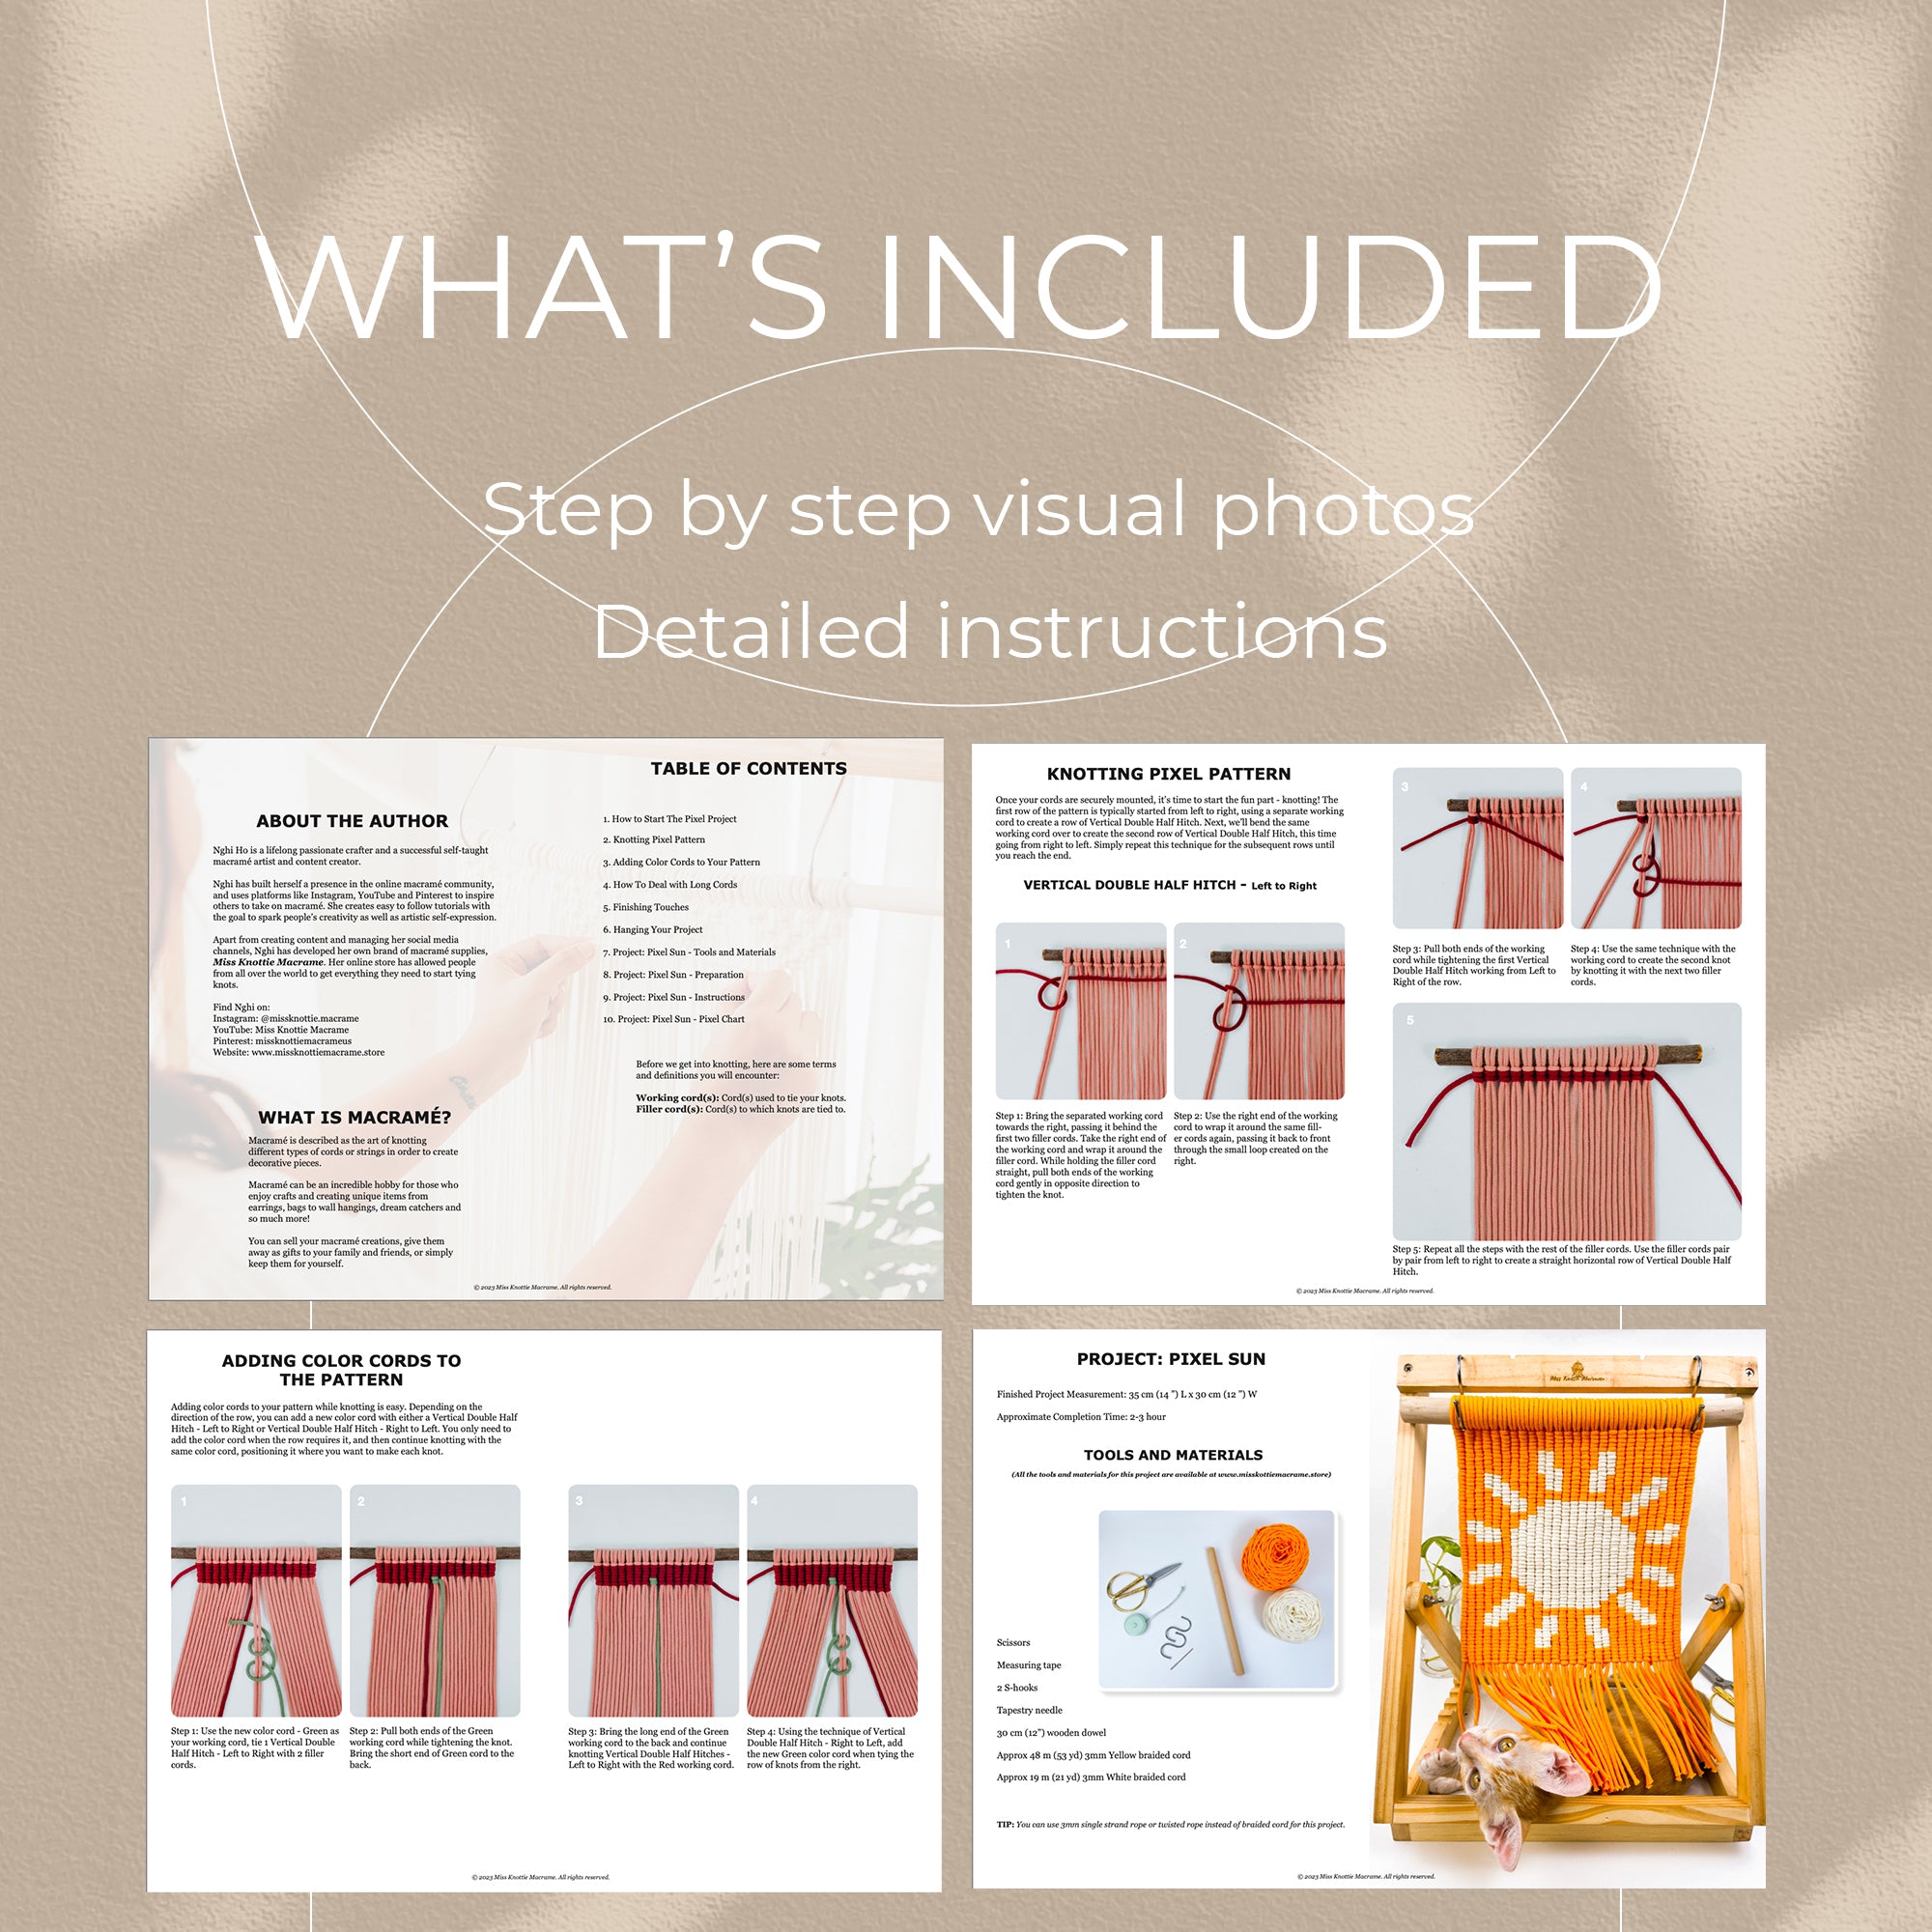 Patrón de arte de Sun Pixel-PDF digital y guía de nudo